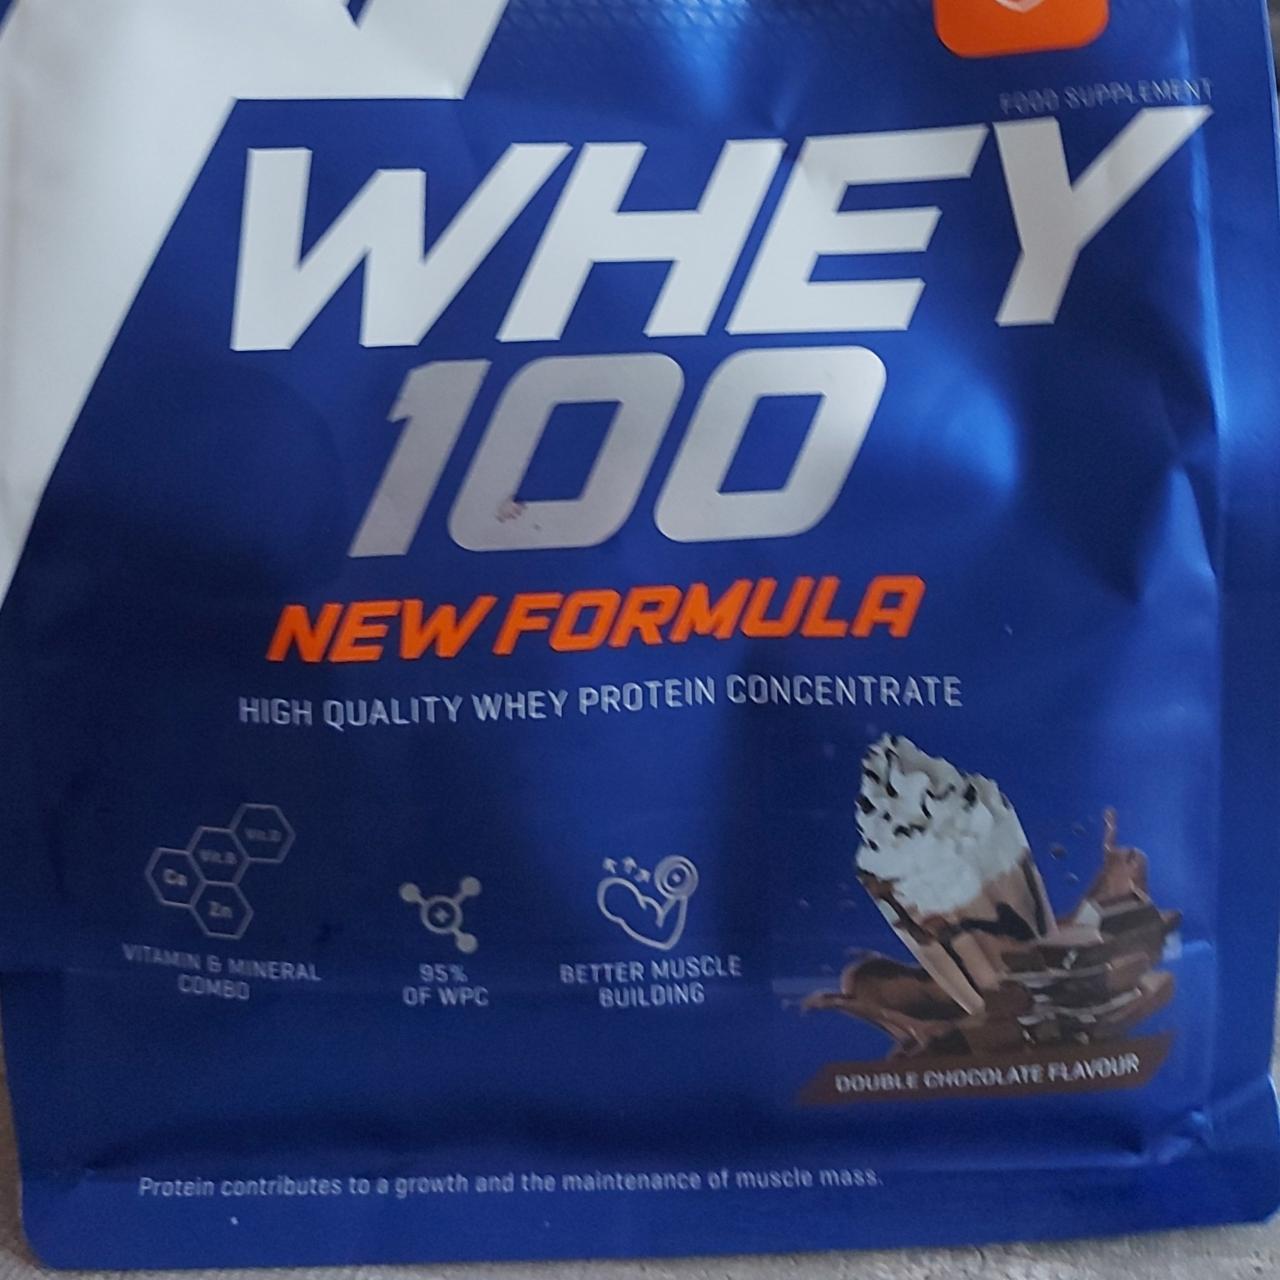 Zdjęcia - Whey 100 new formula double chocolate Trec